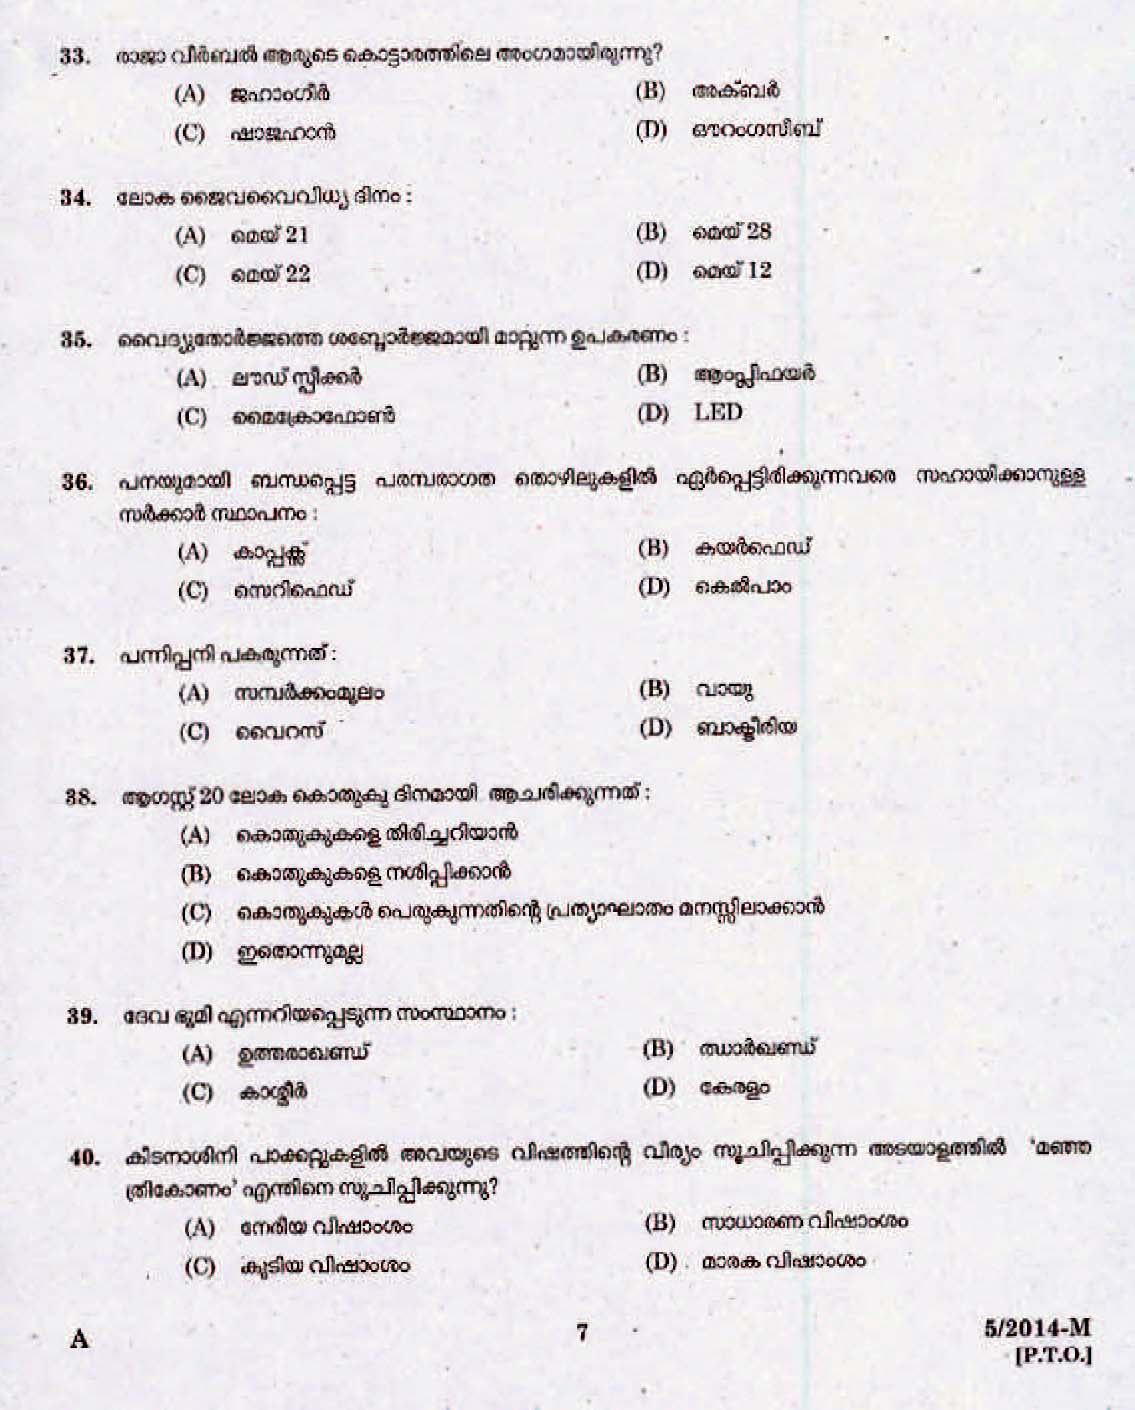 Kerala Last Grade Servants Exam 2014 Question Paper Code 52014 M 5